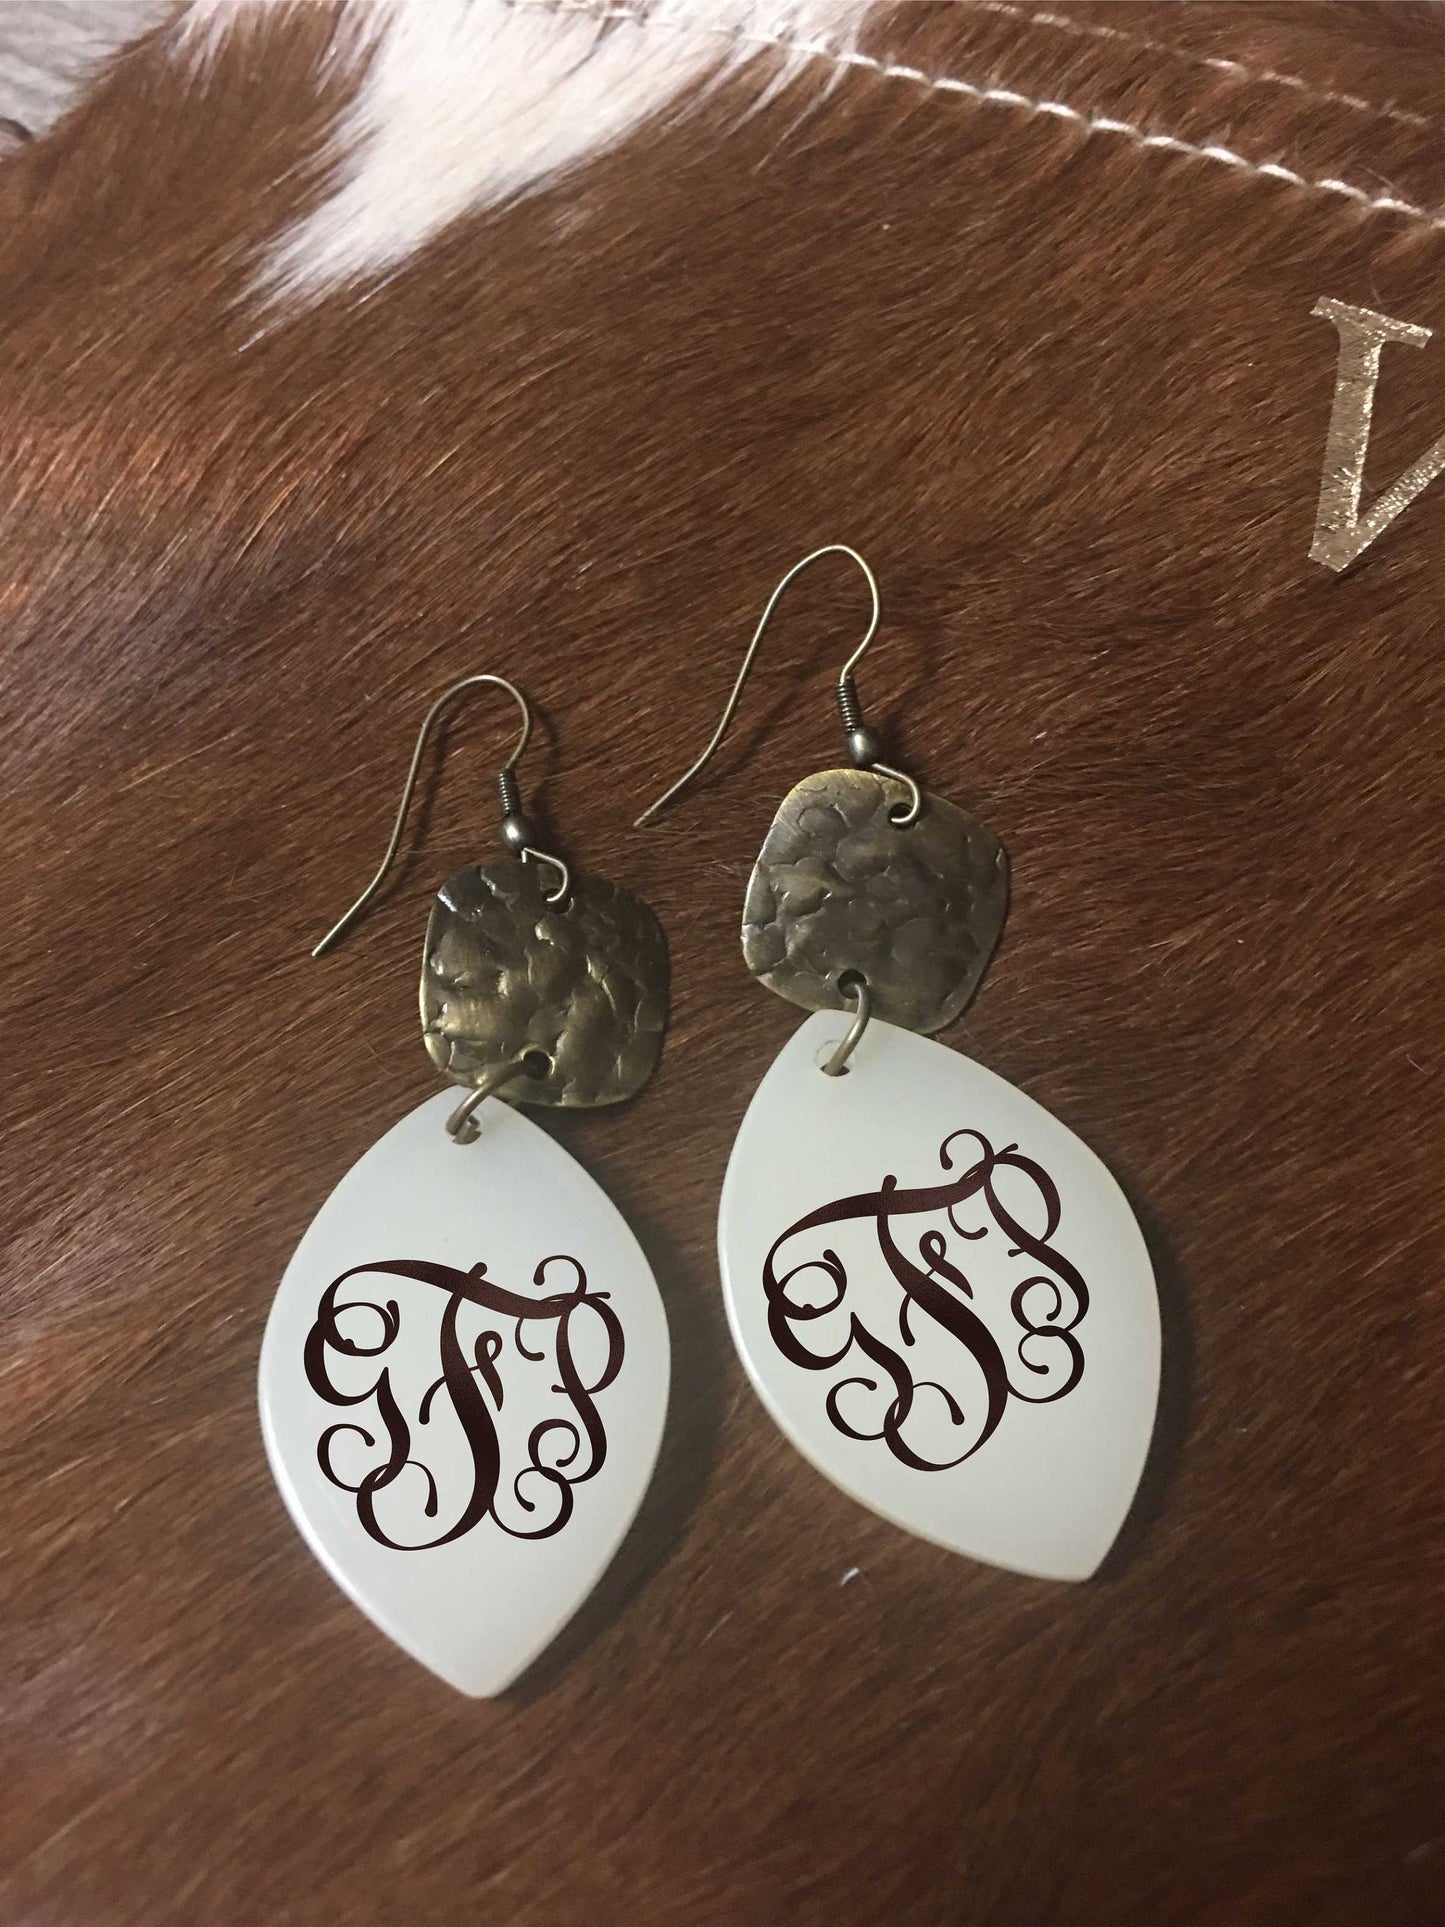 Monogrammed earrings, fairy drop monogrammed earrings